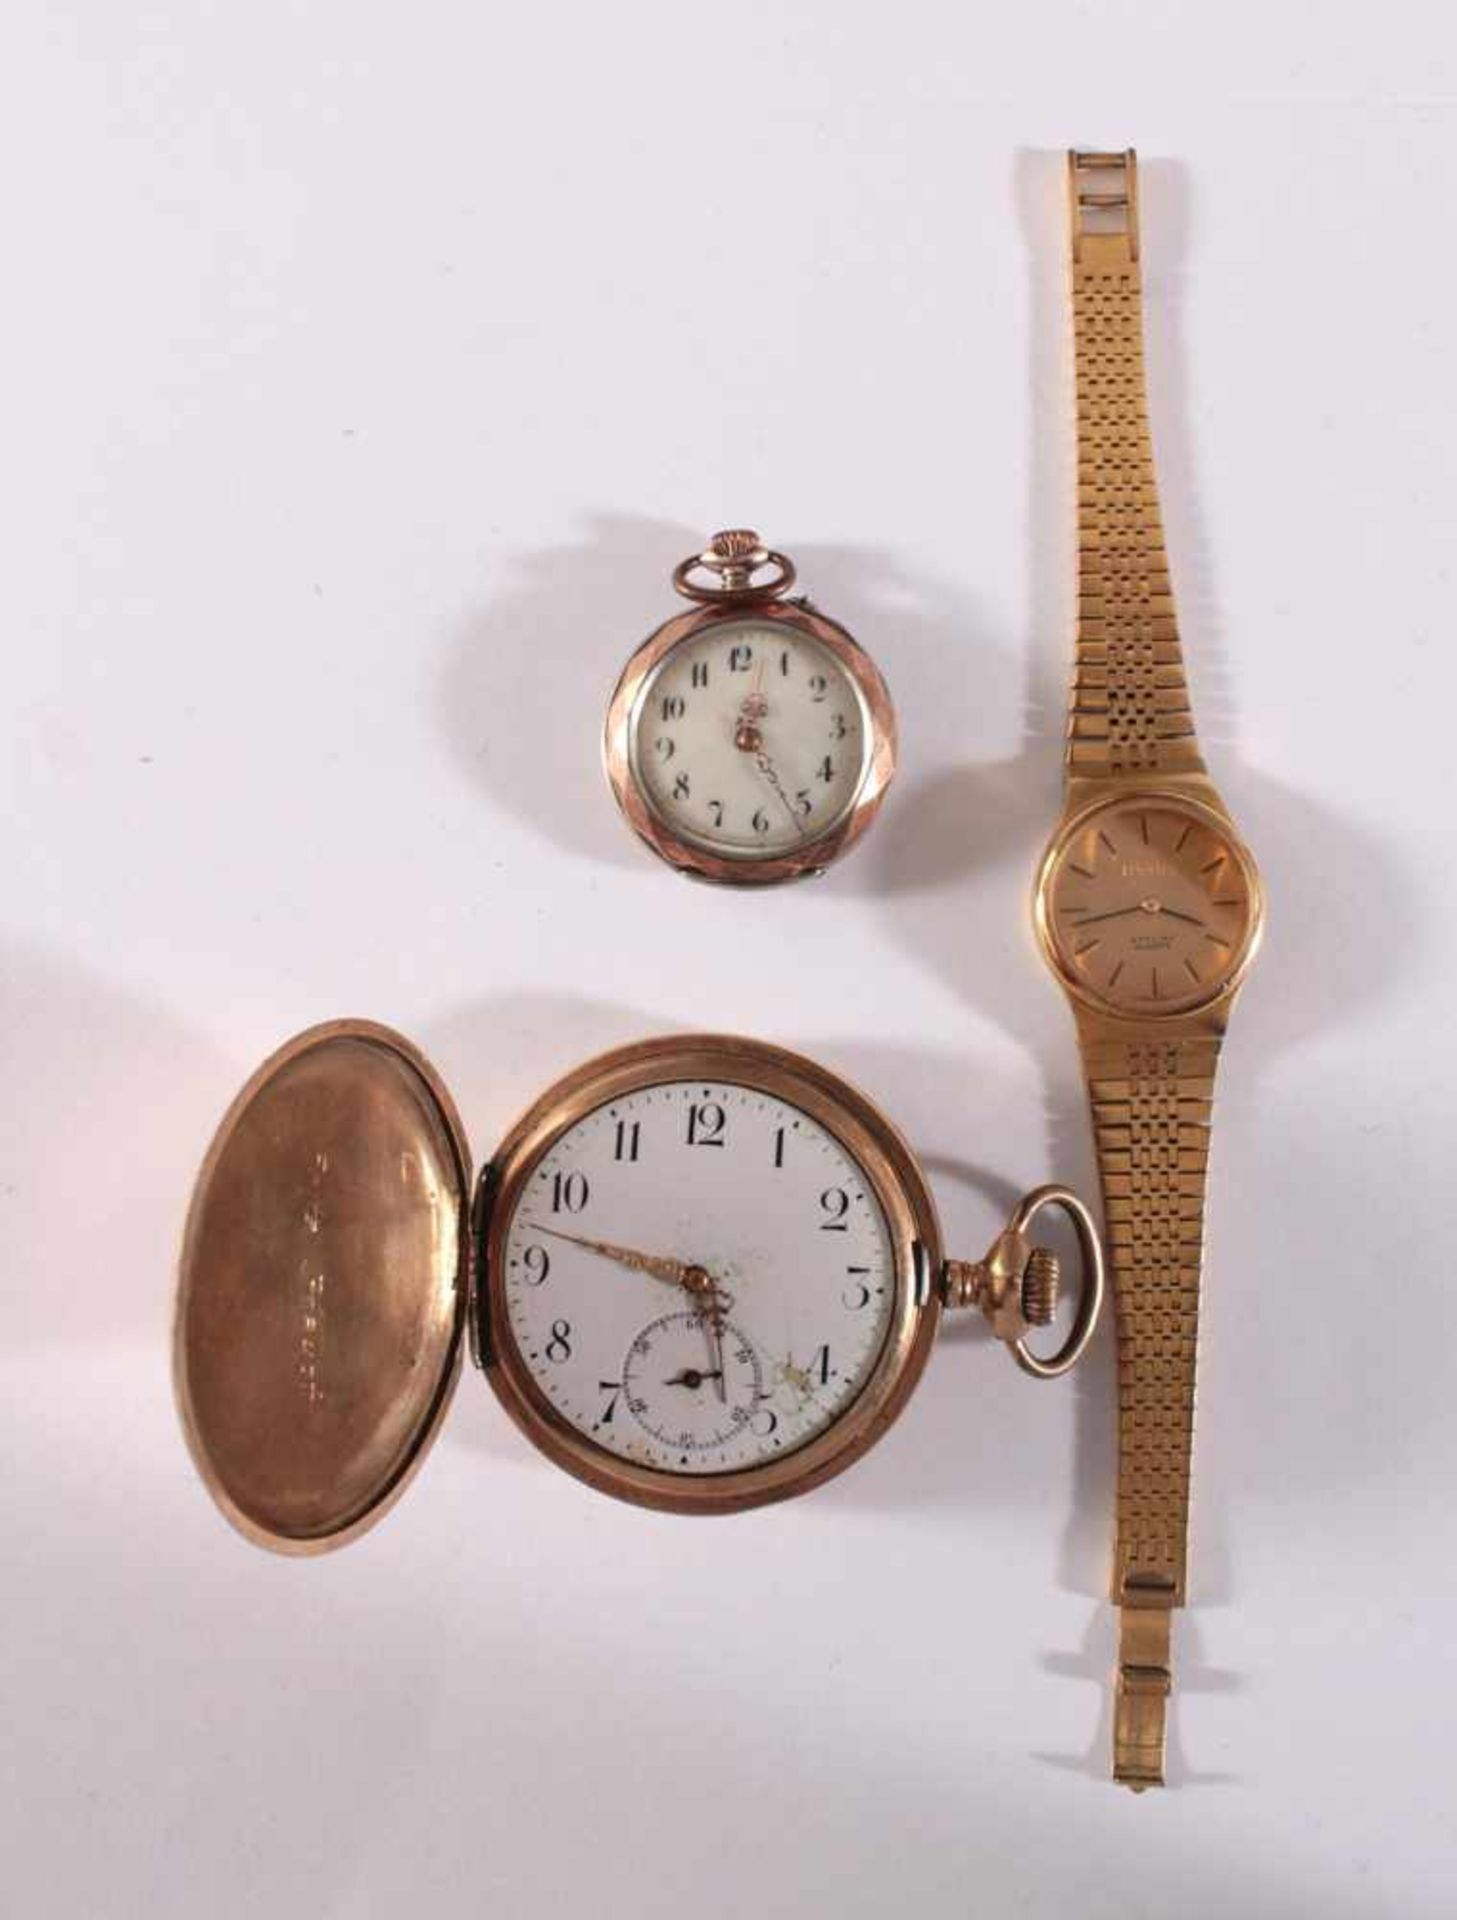 Uhrenkonvolut für Bastler1 Herrentaschenuhr "Illinois", vergoldet, Glas fehlt, beschädigtes